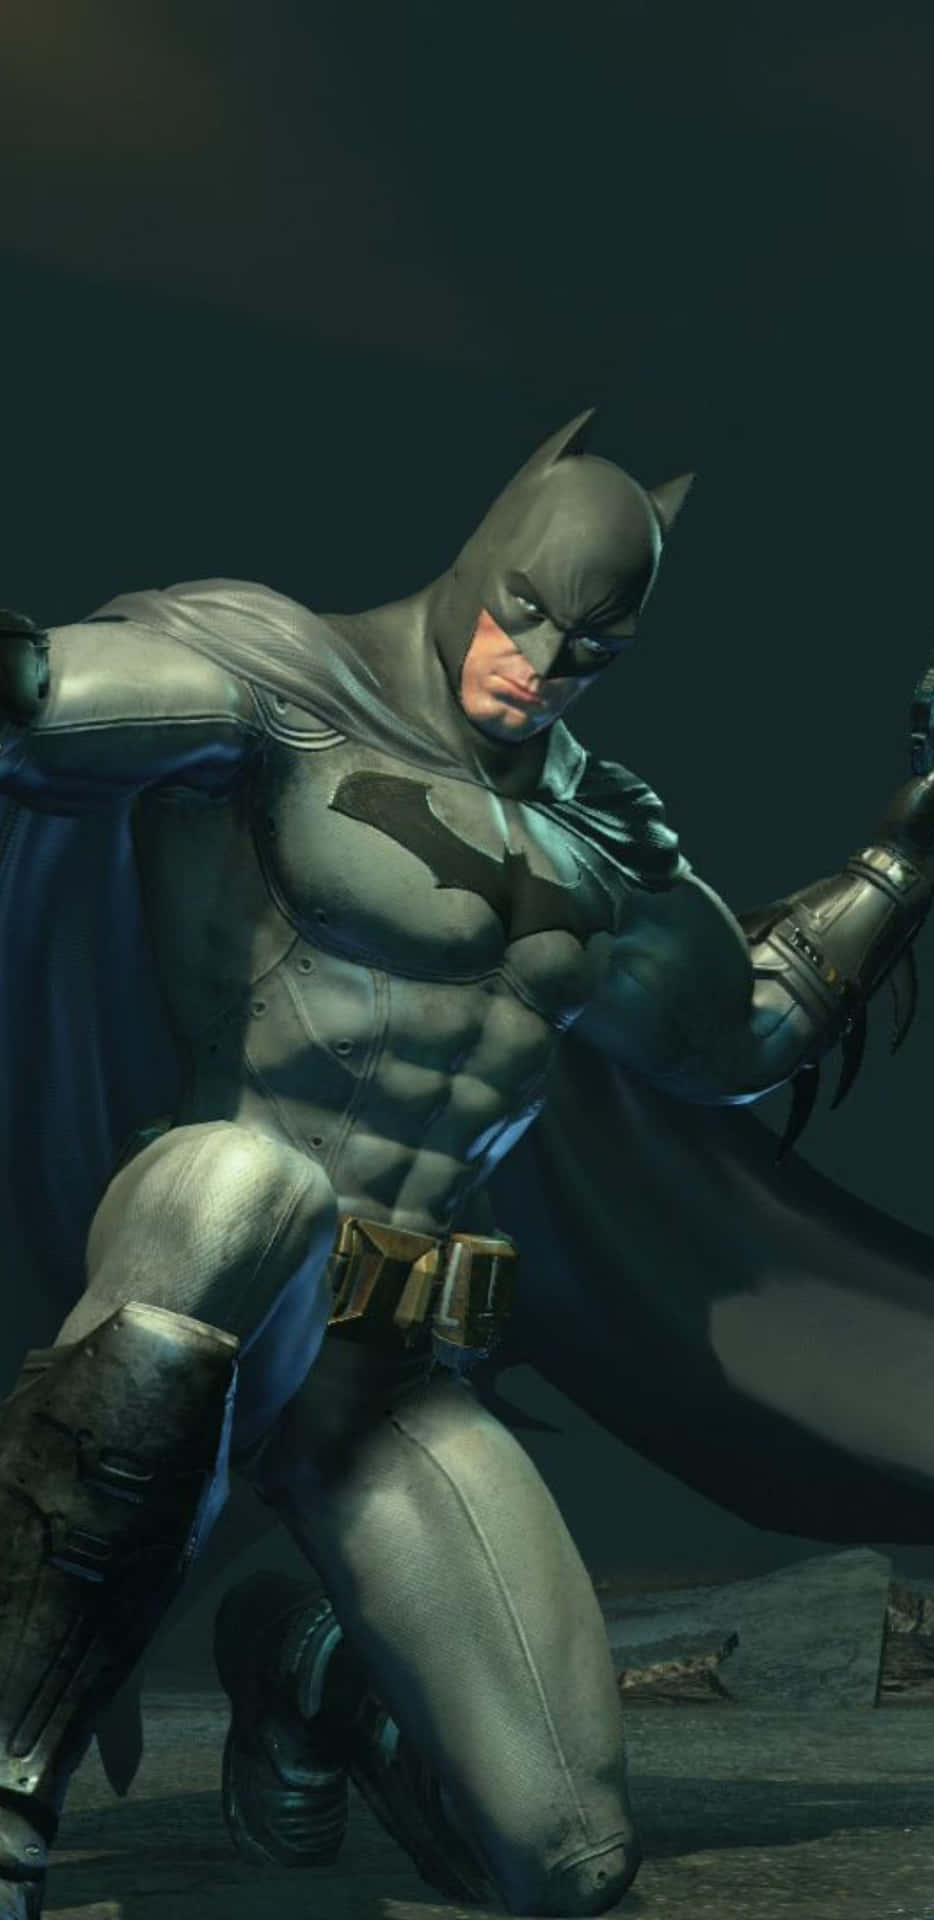 Bold Pixel 3XL with Dark Batman Arkham City Theme